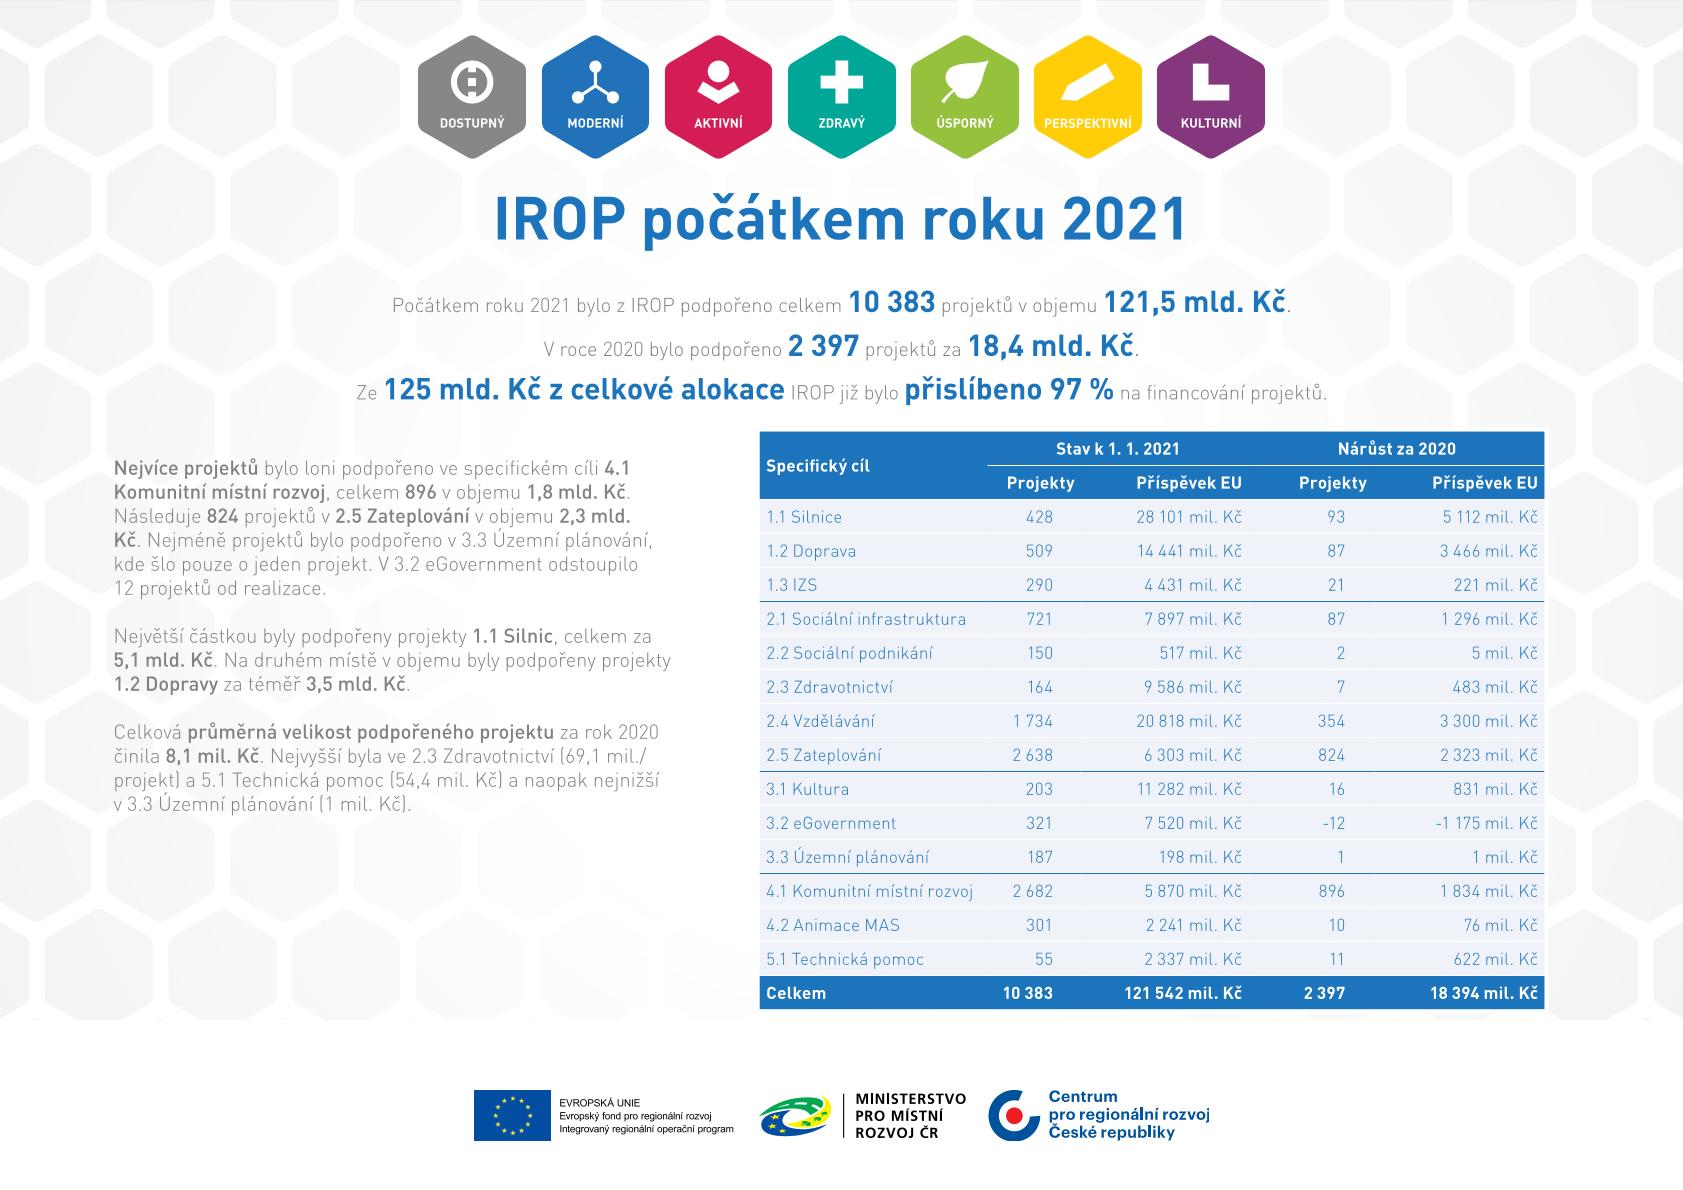 Factsheet - IROP v roce 2020 – leden 2021